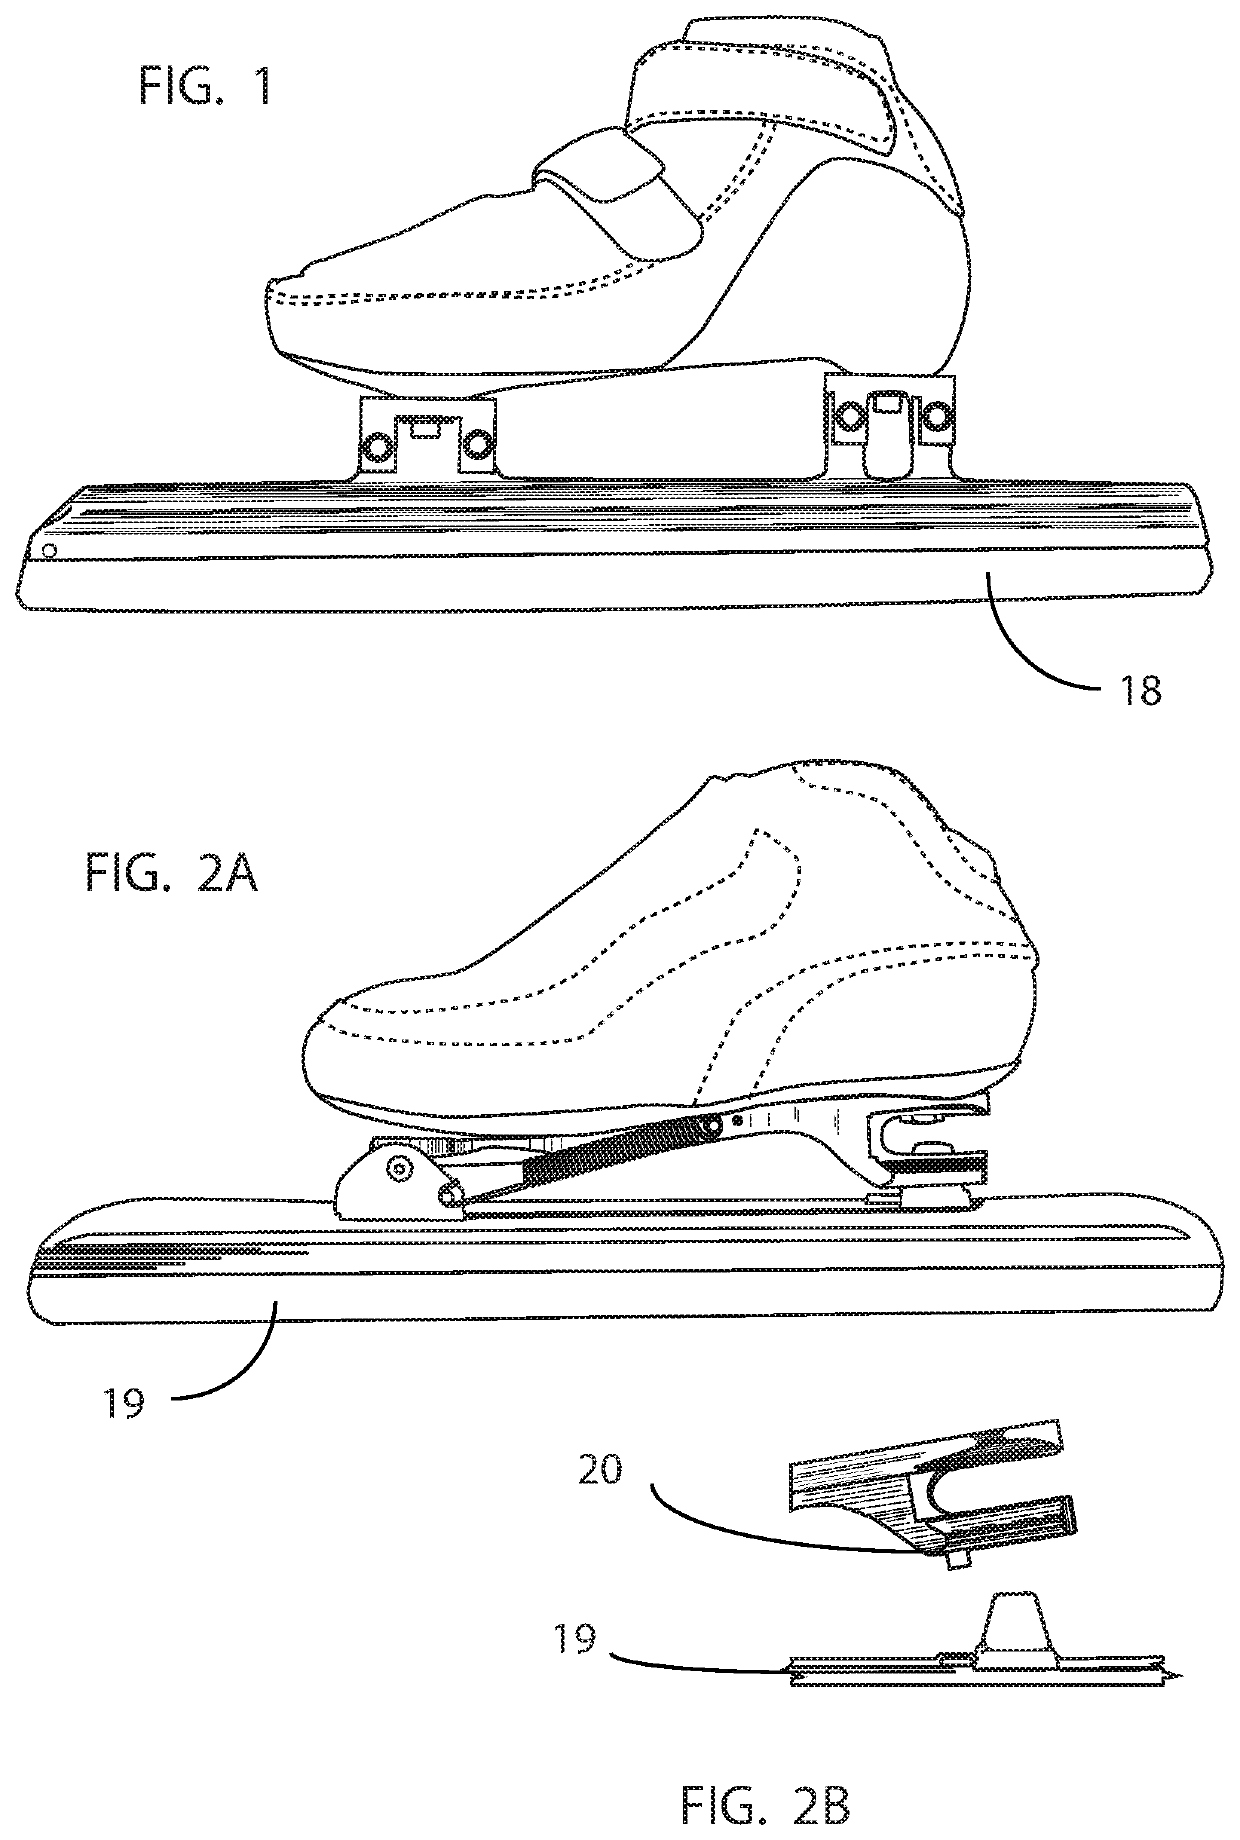 Ice skate blade measuring apparatus